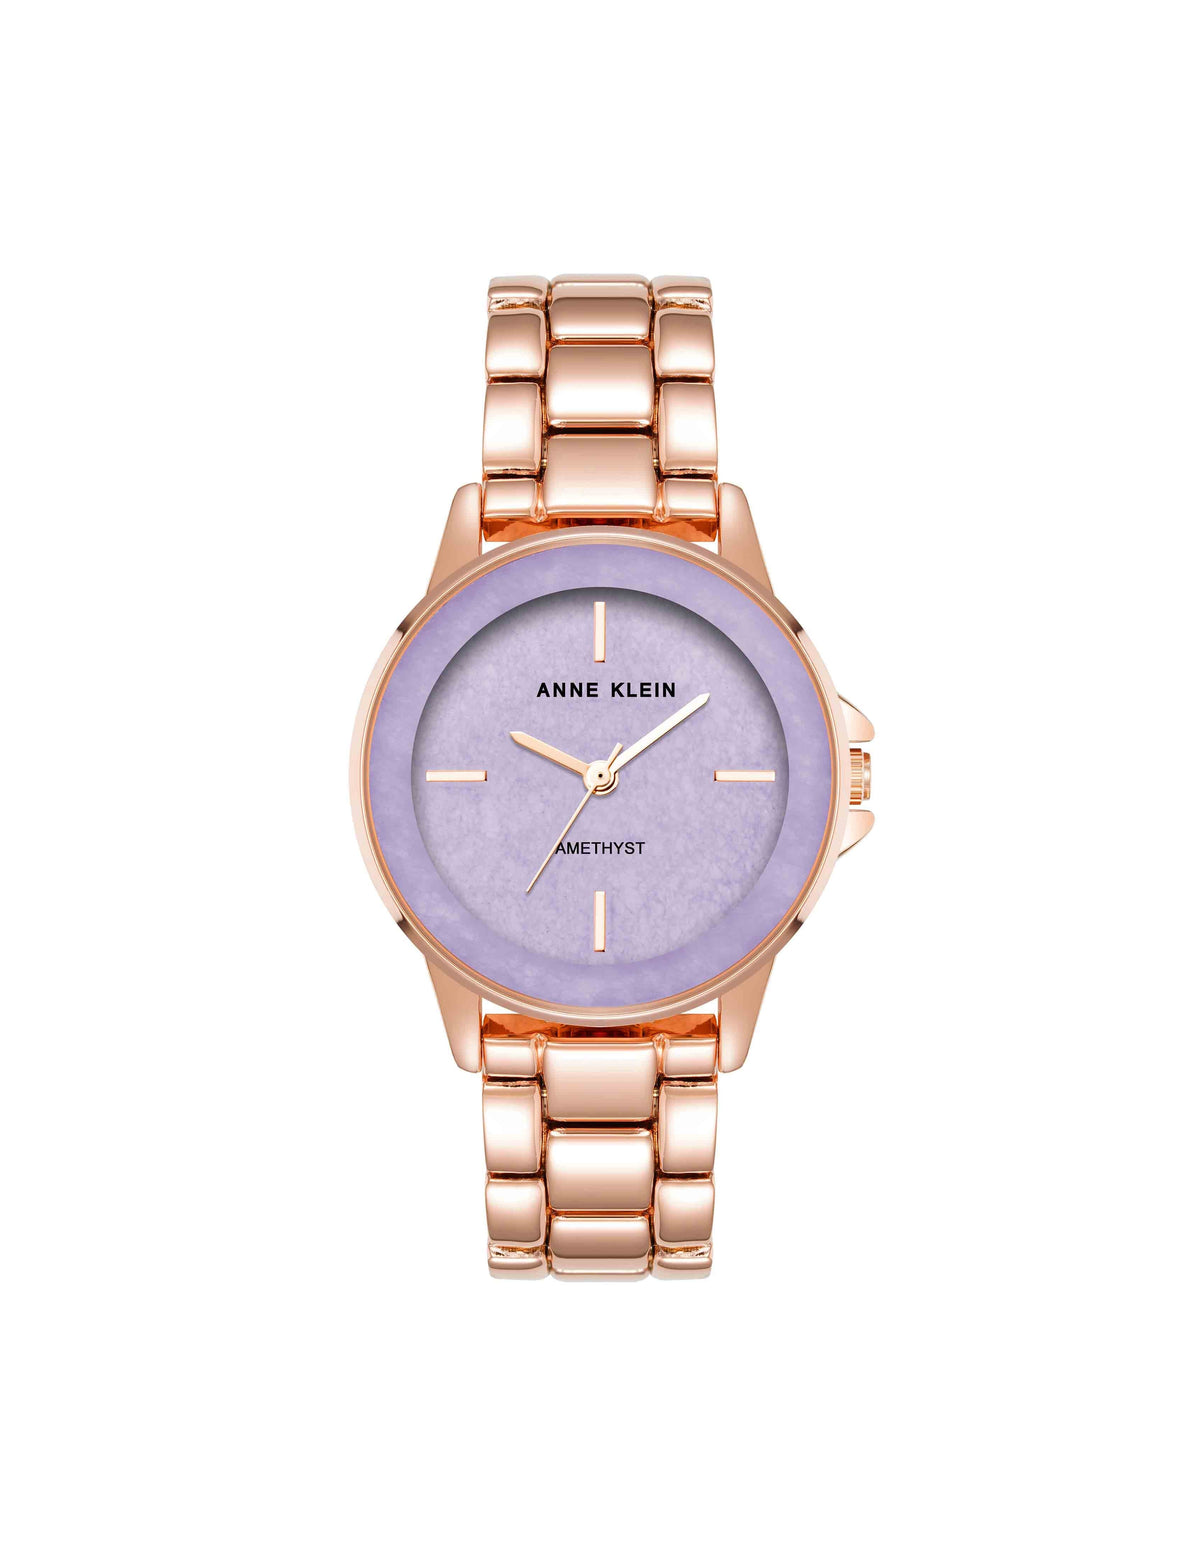 Anne Klein Amethyst/Rose Gold Gemstone Dial Bracelet Watch